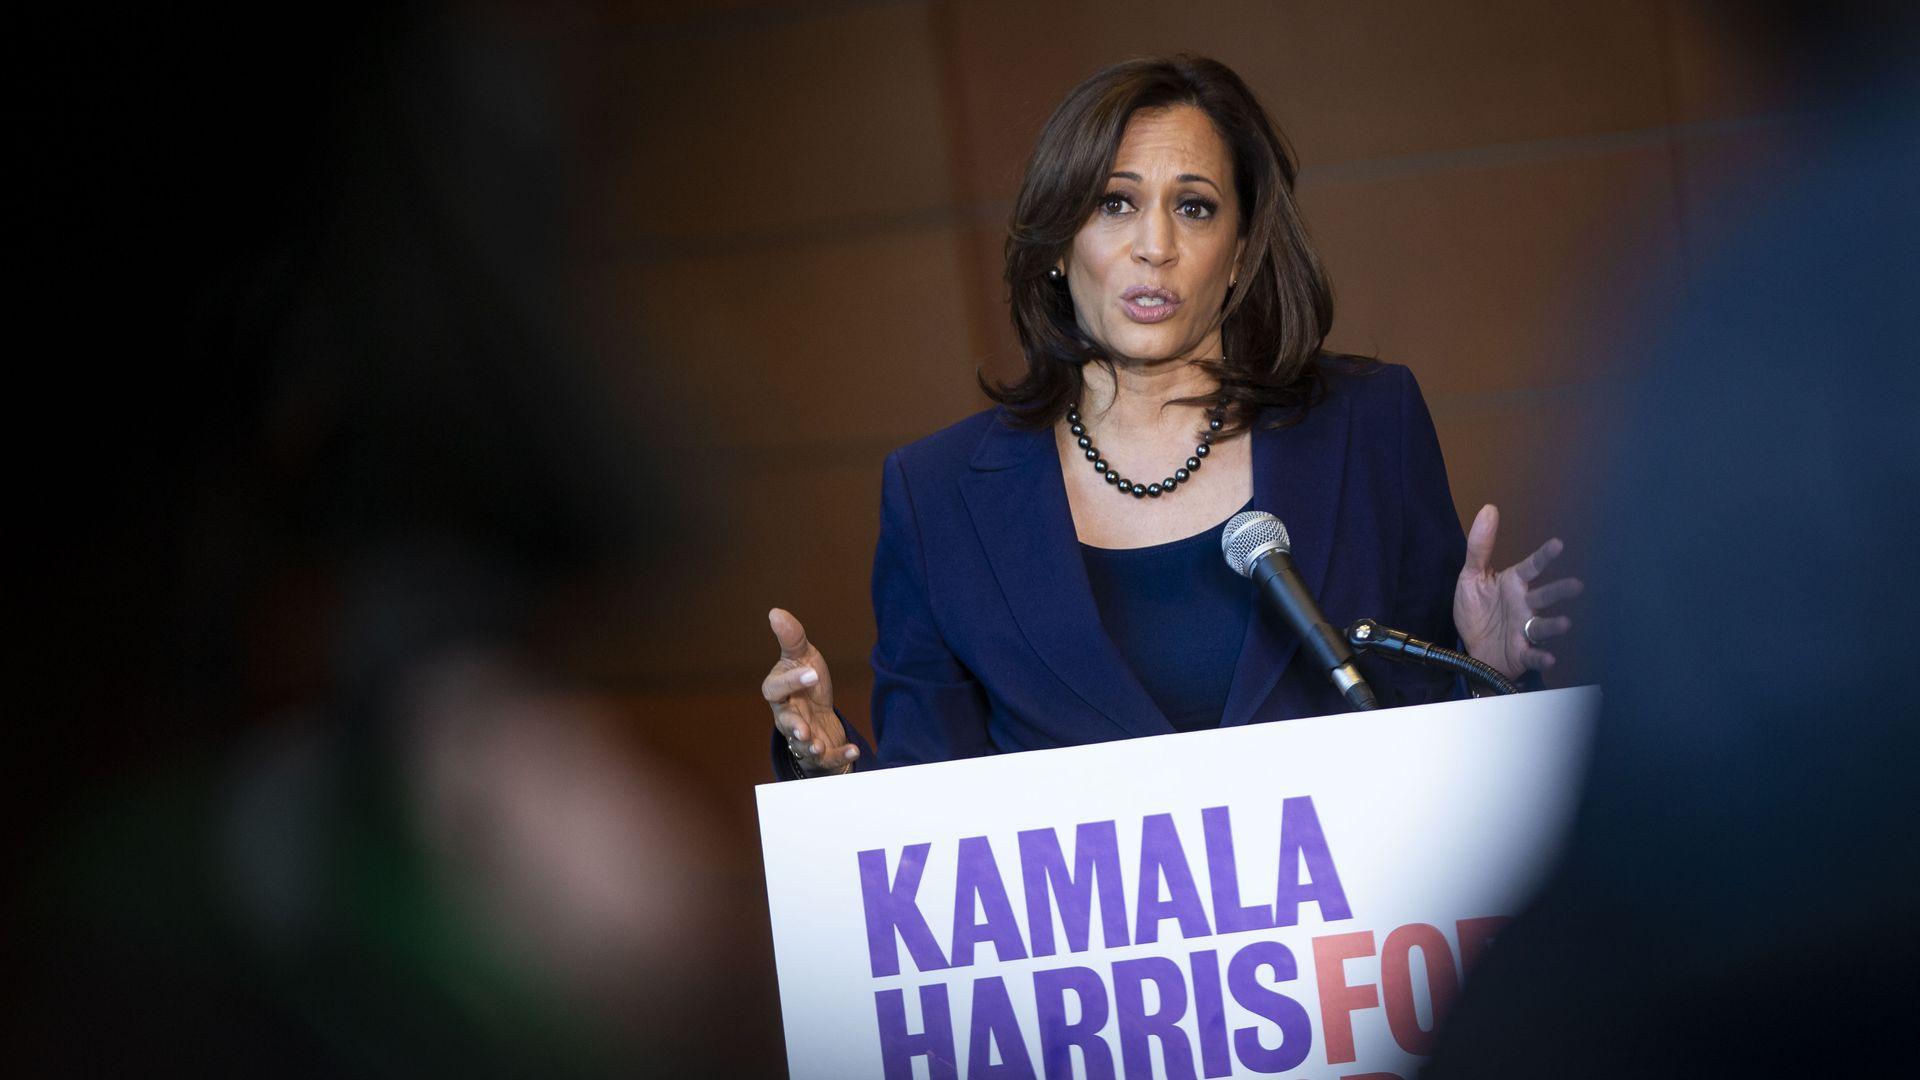 Kamala Harris' 2020 campaign raised $1.5 million in its